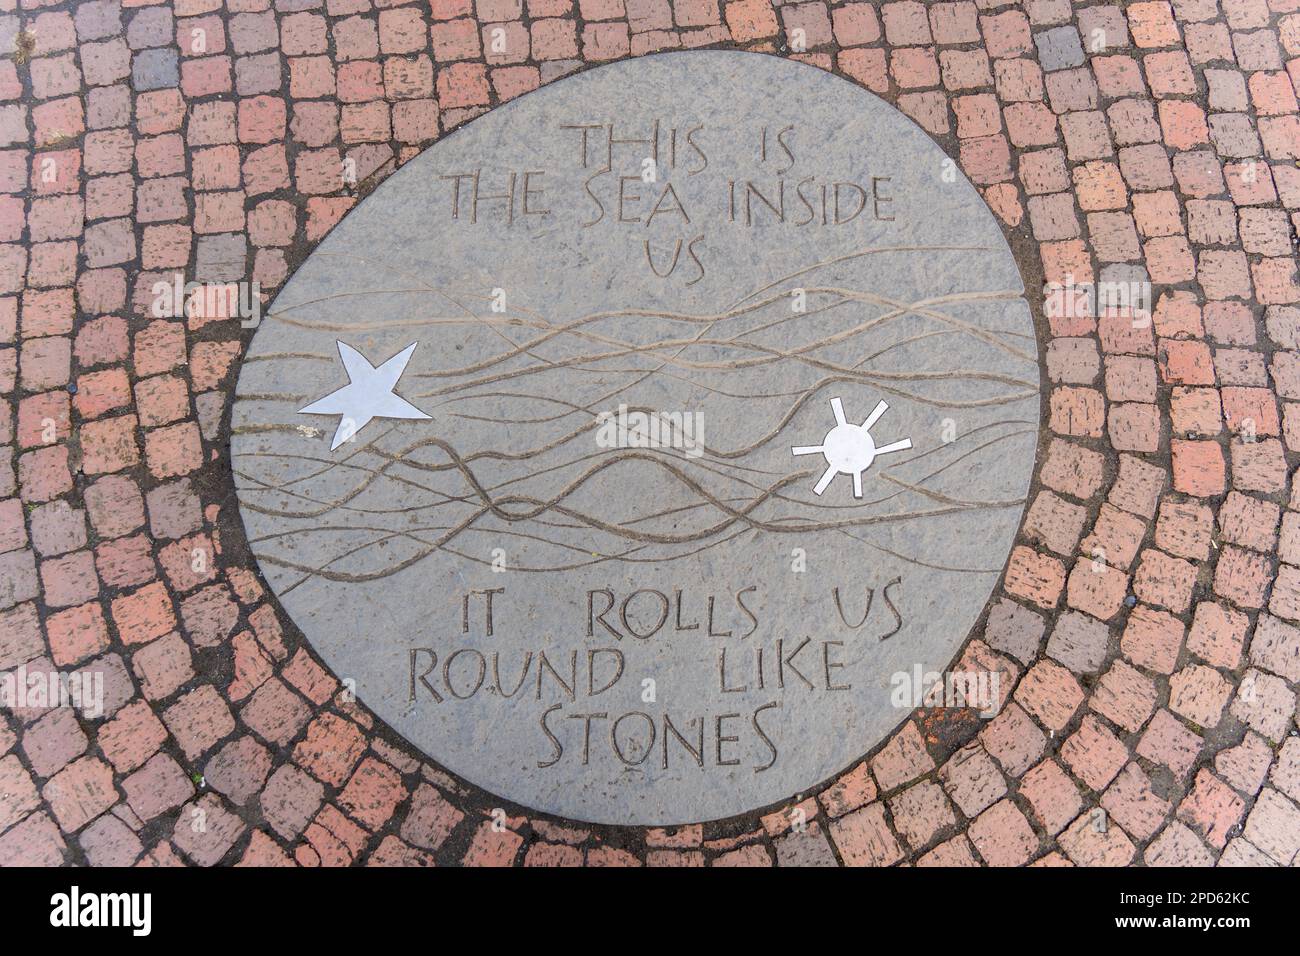 Auf einer Tafel auf dem Stadtplatz von Amble, Northumberland, Großbritannien, steht: „Dies ist das Meer in uns. Es rollt uns wie Steine." Stockfoto